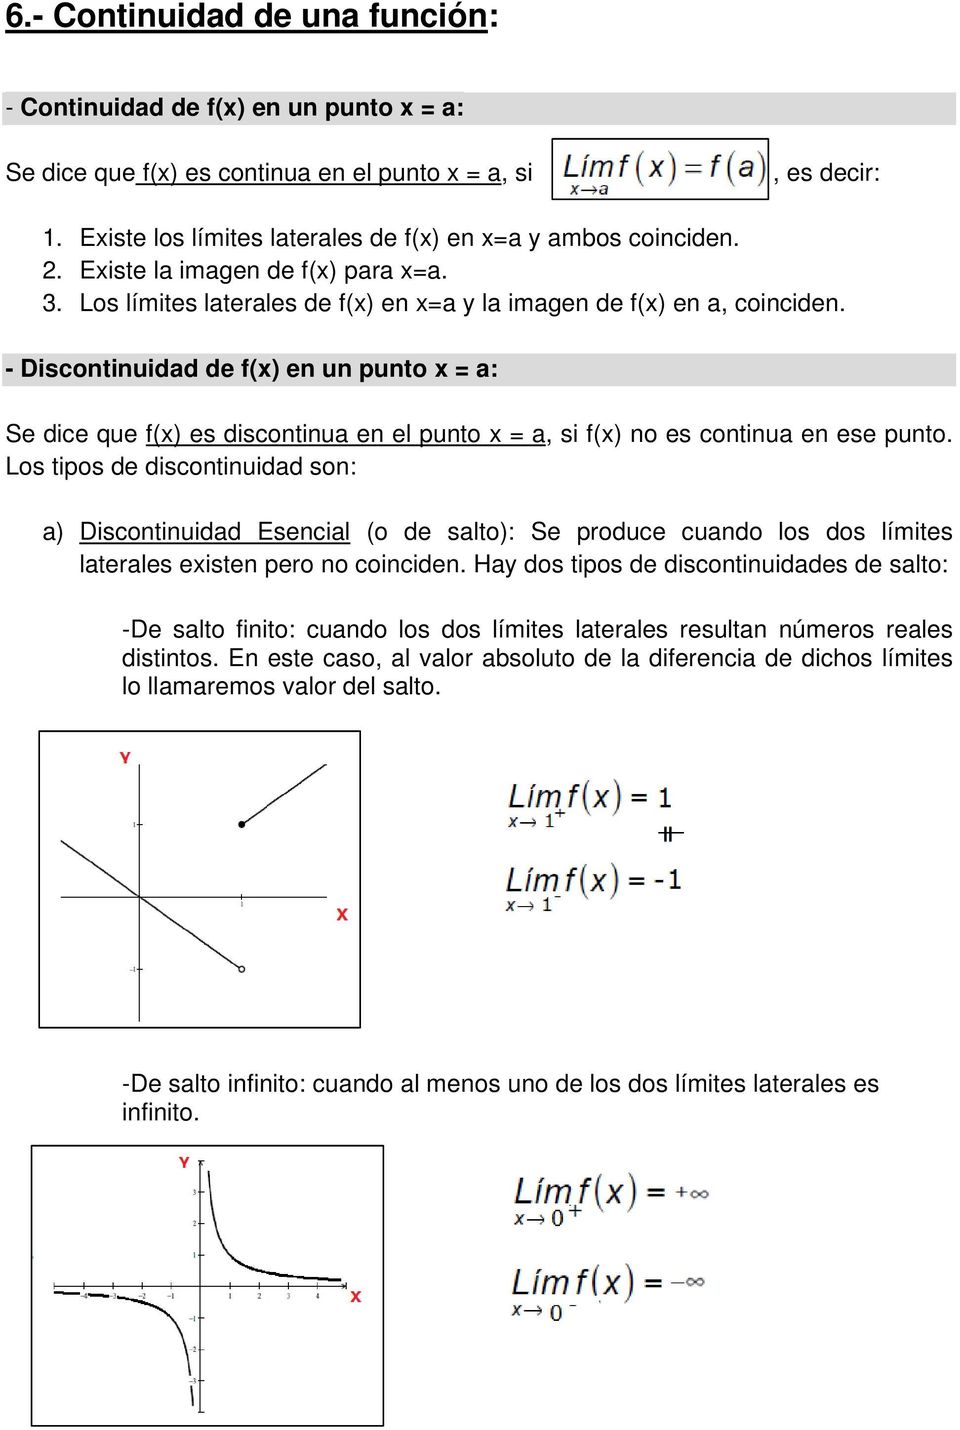 - Discontinuidad de f(x) en un punto x = a: Se dice que f(x) es discontinua en el punto x = a, si f(x) no es continua en ese punto.